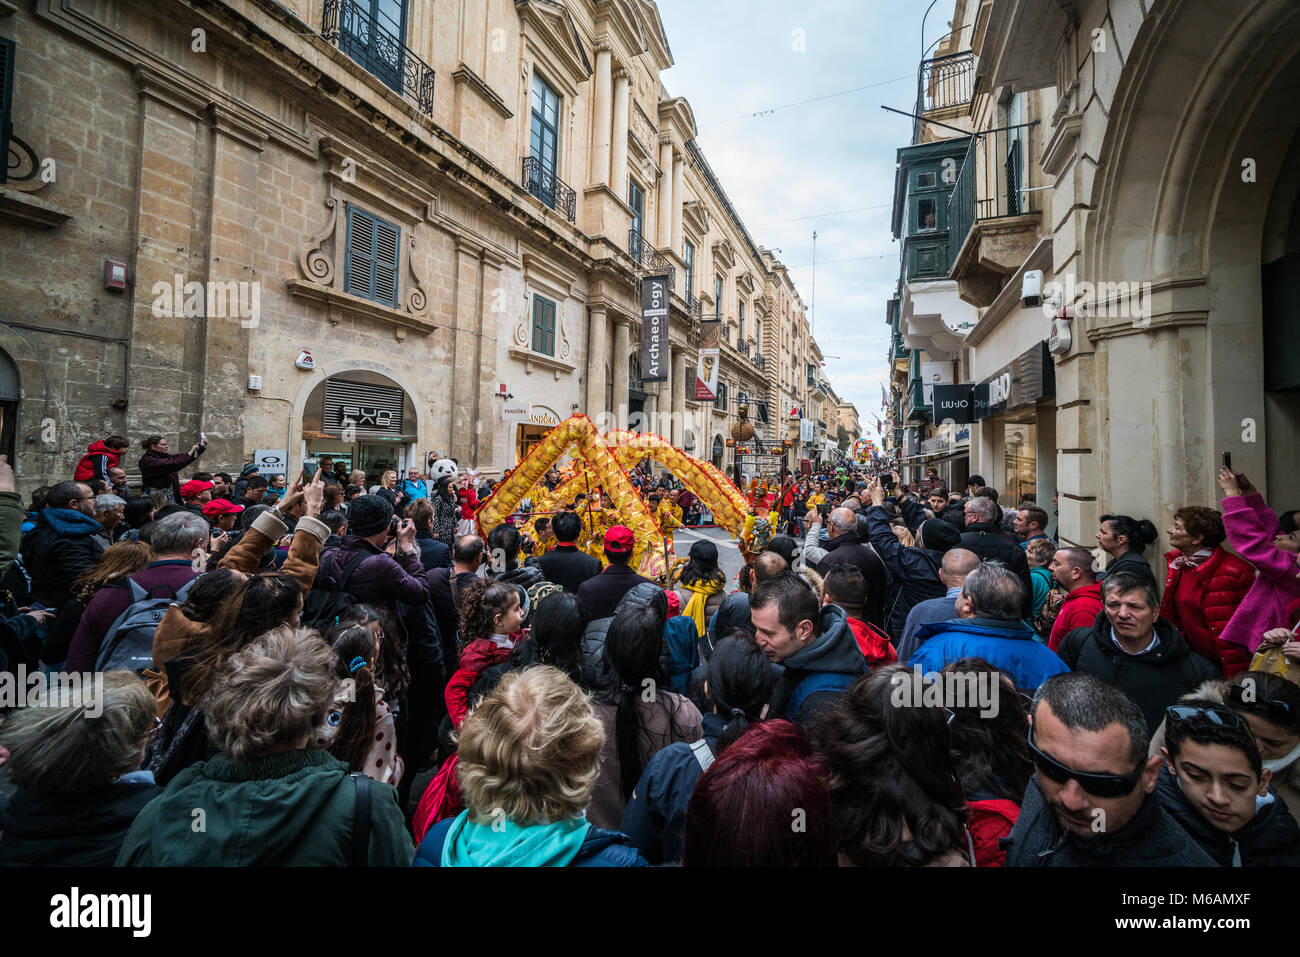 Le carnaval, La Valette, Malte, Europe. Banque D'Images